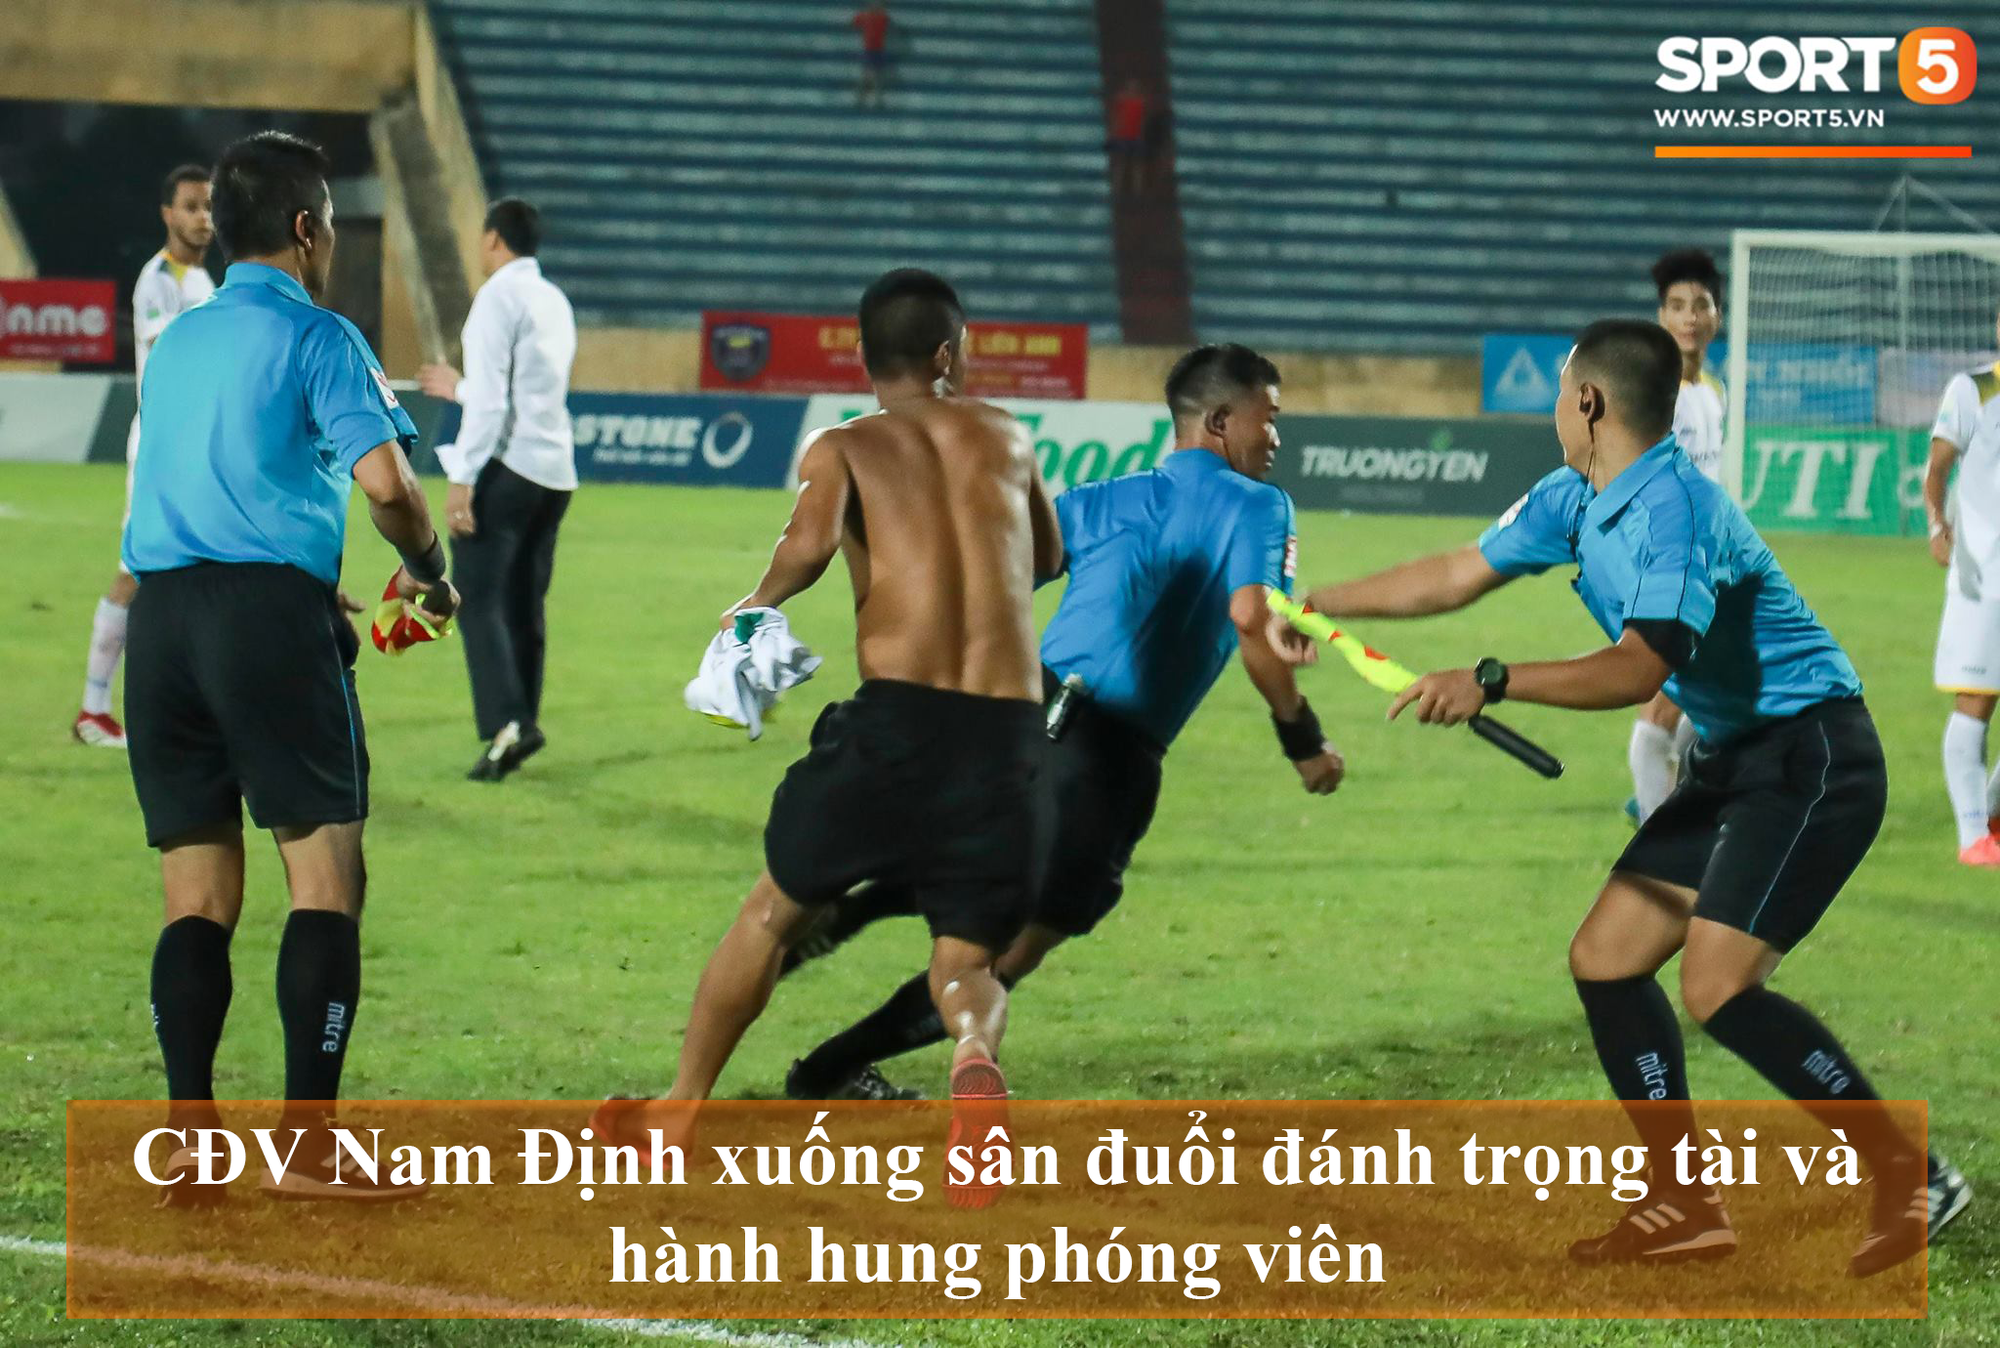 Những sự kiện bóng đá Việt đáng chú ý trong thời gian diễn ra World Cup  - Ảnh 5.